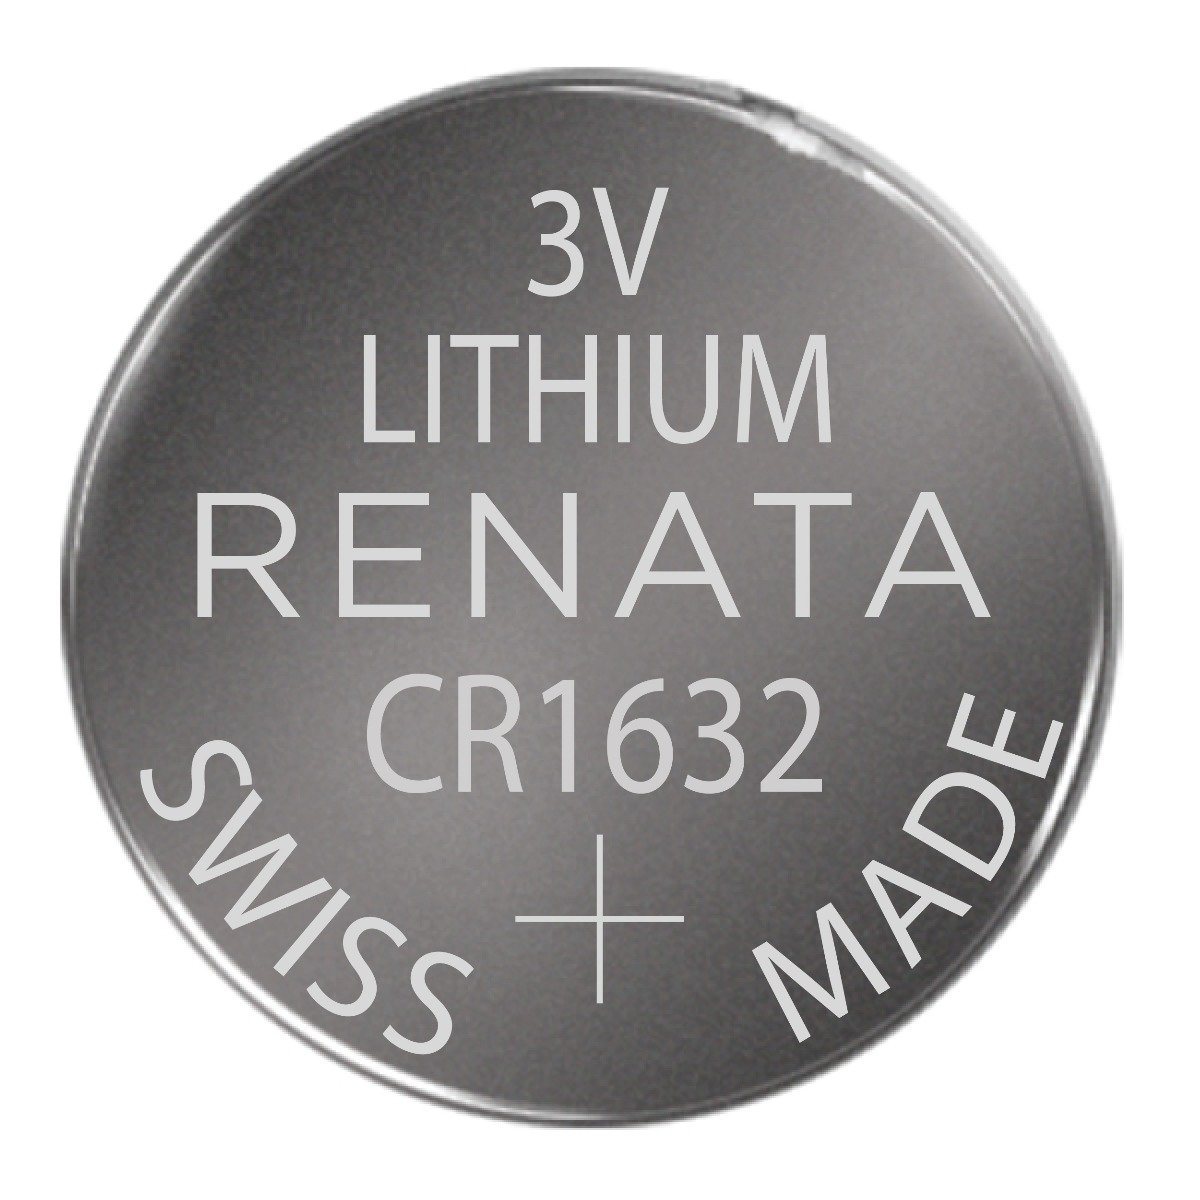 Panasonic CR1620 Lithium 3V Coin Cell Battery, Bulk